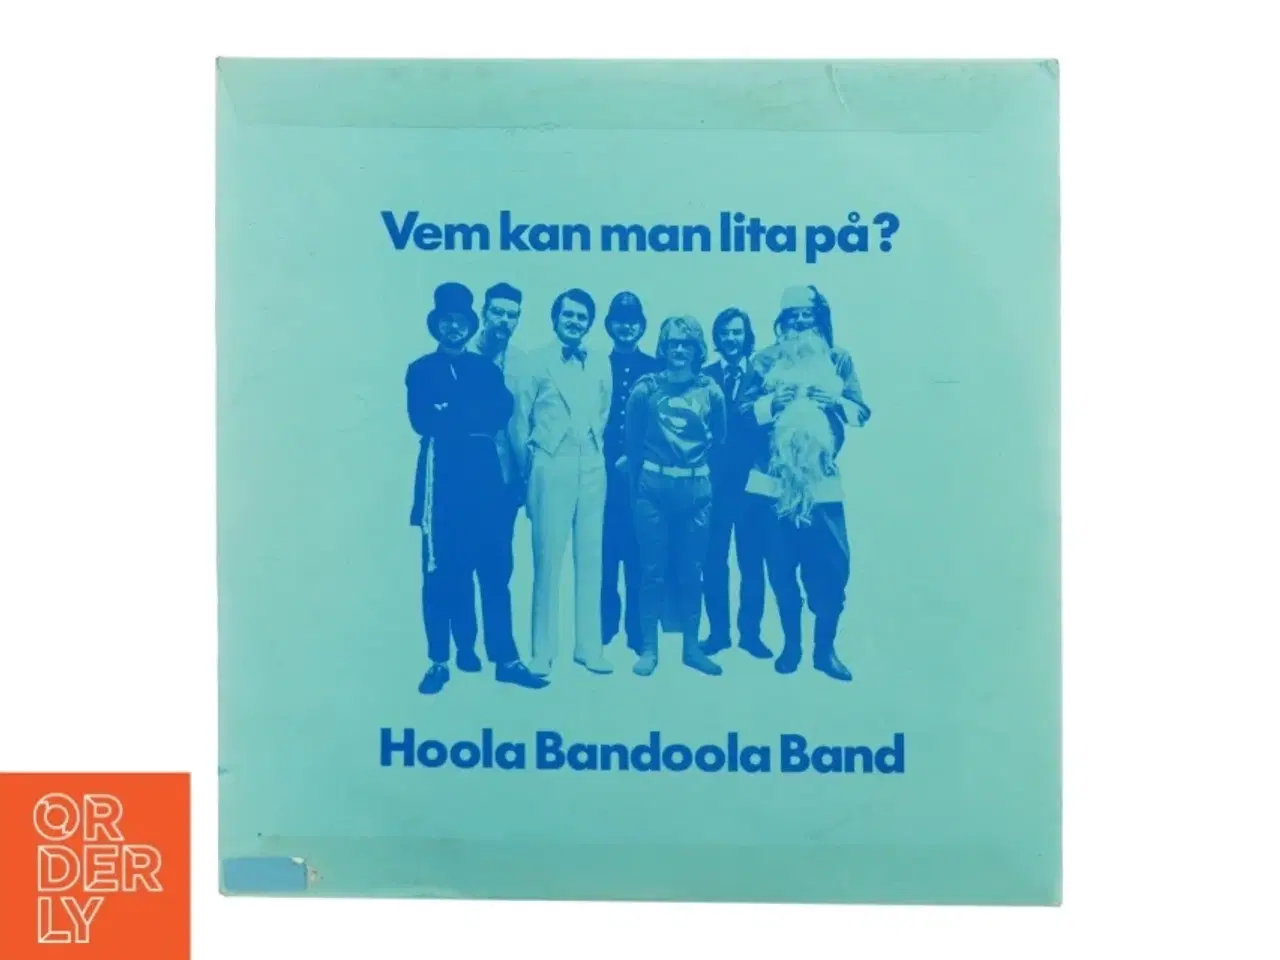 Billede 1 - Hoola Bandoola Band - Vem kan man lita på? LP fra MNW (str. 31 x 31 cm)